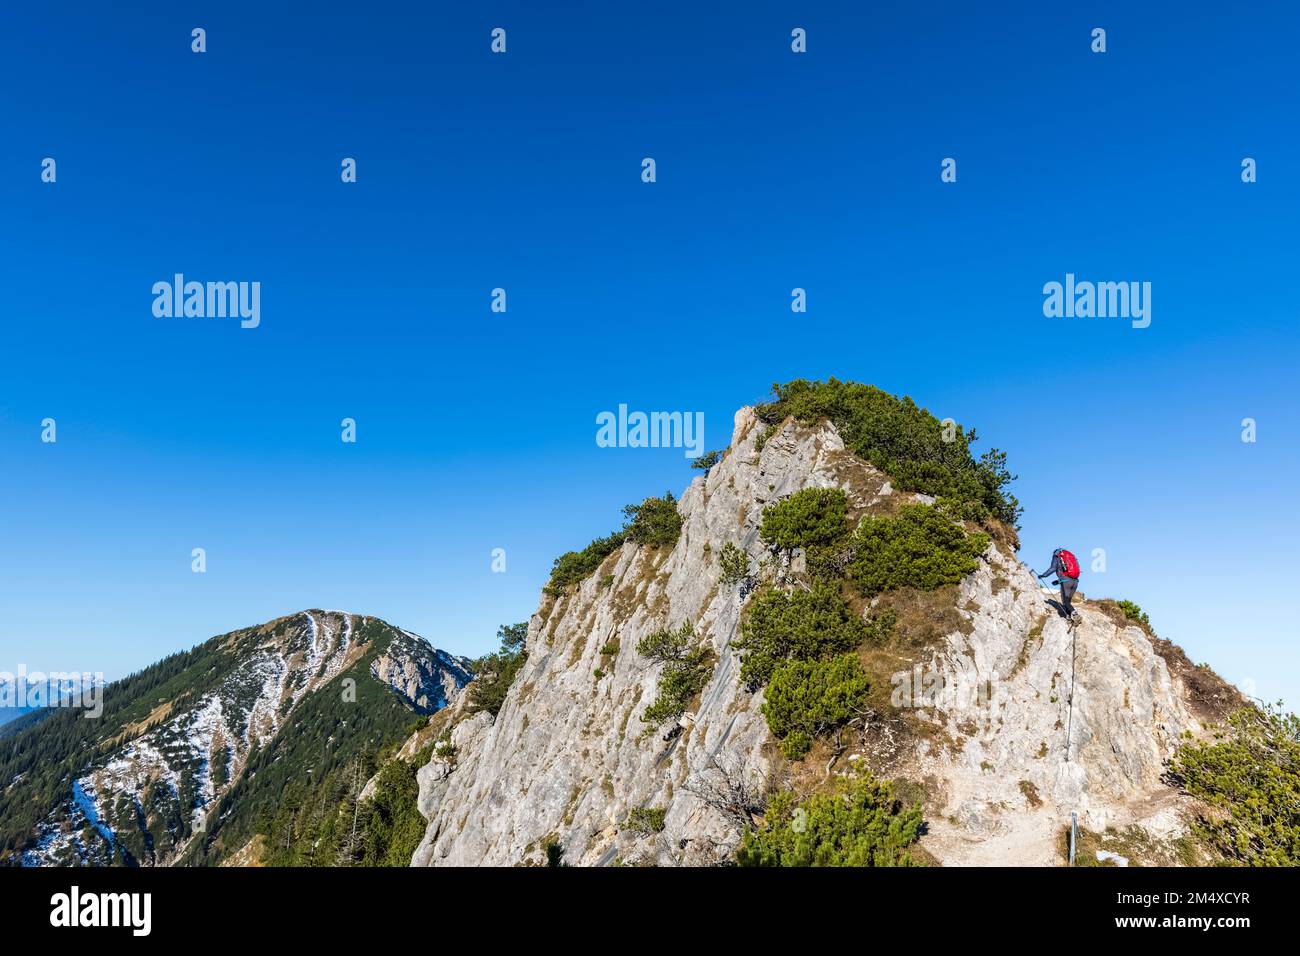 Germania, Baviera, escursionista femminile che raggiunge la cima del monte Heimgarten Foto Stock